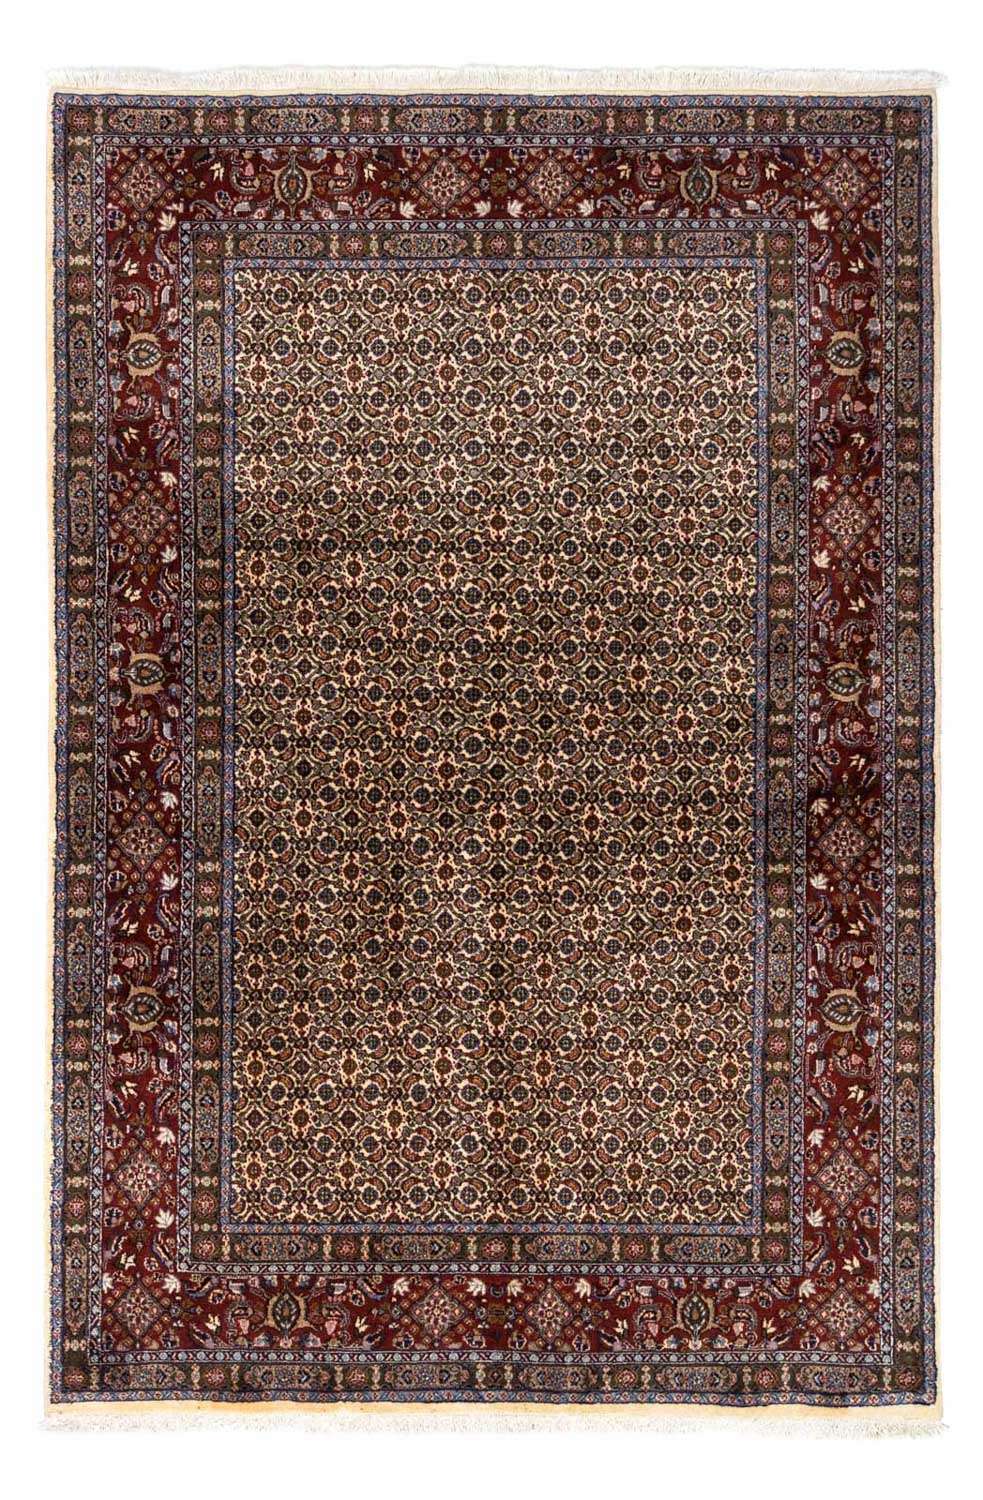 Persisk teppe - klassisk - 237 x 168 cm - beige